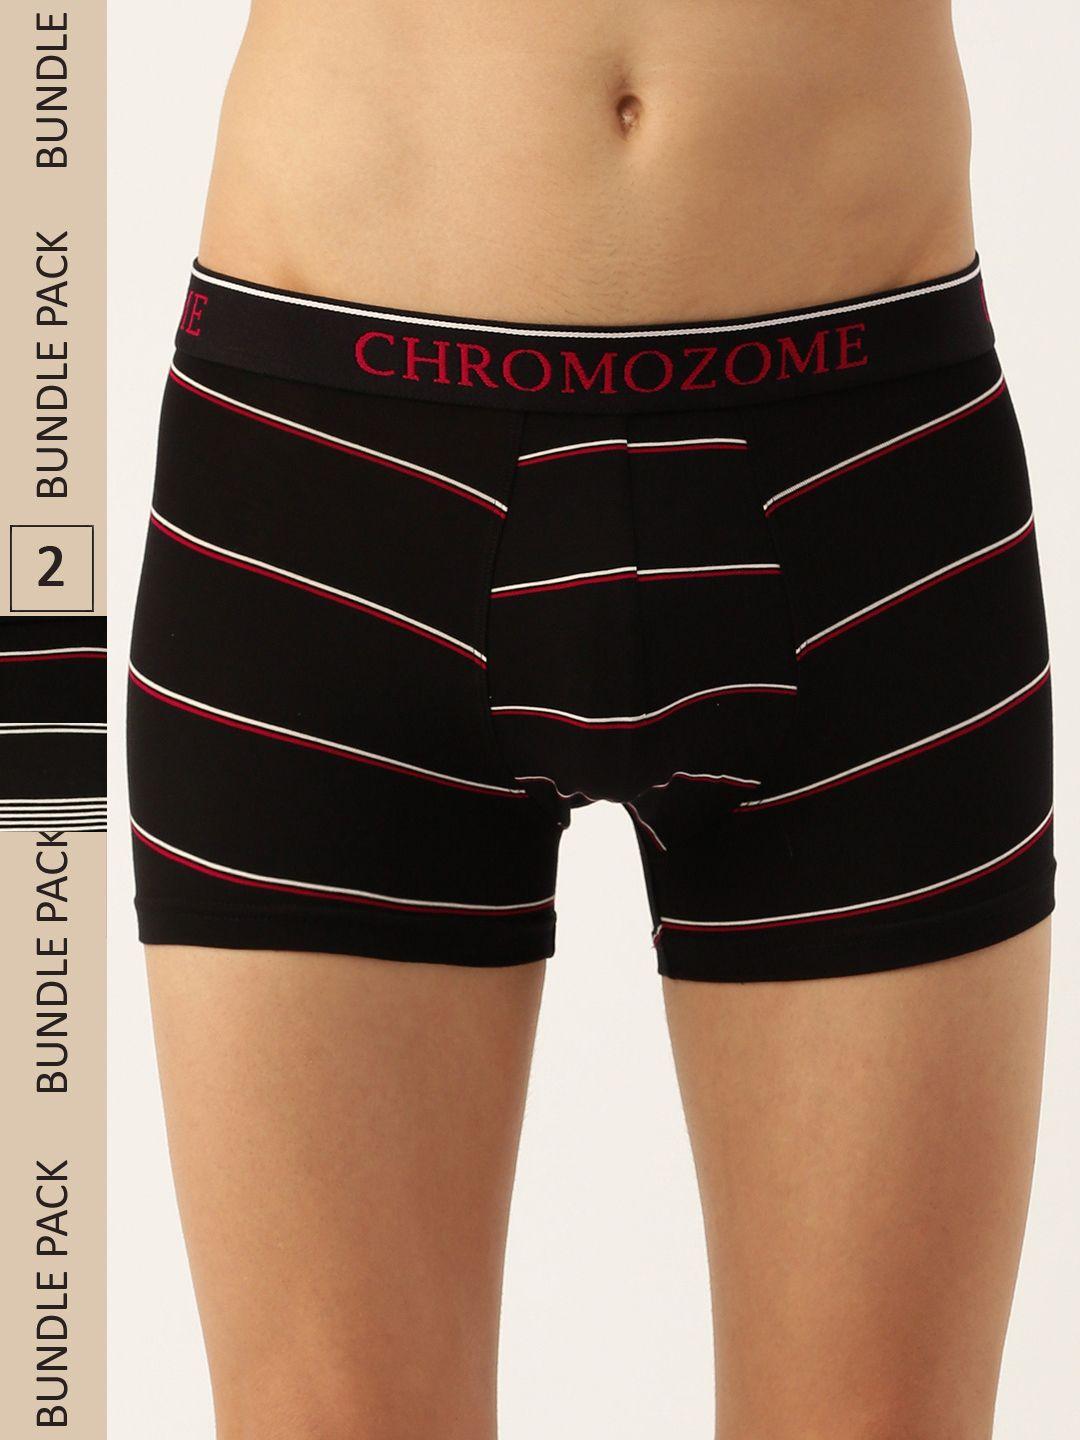 chromozome men pack of 2 ultra-premium striped trunks 8902733643504